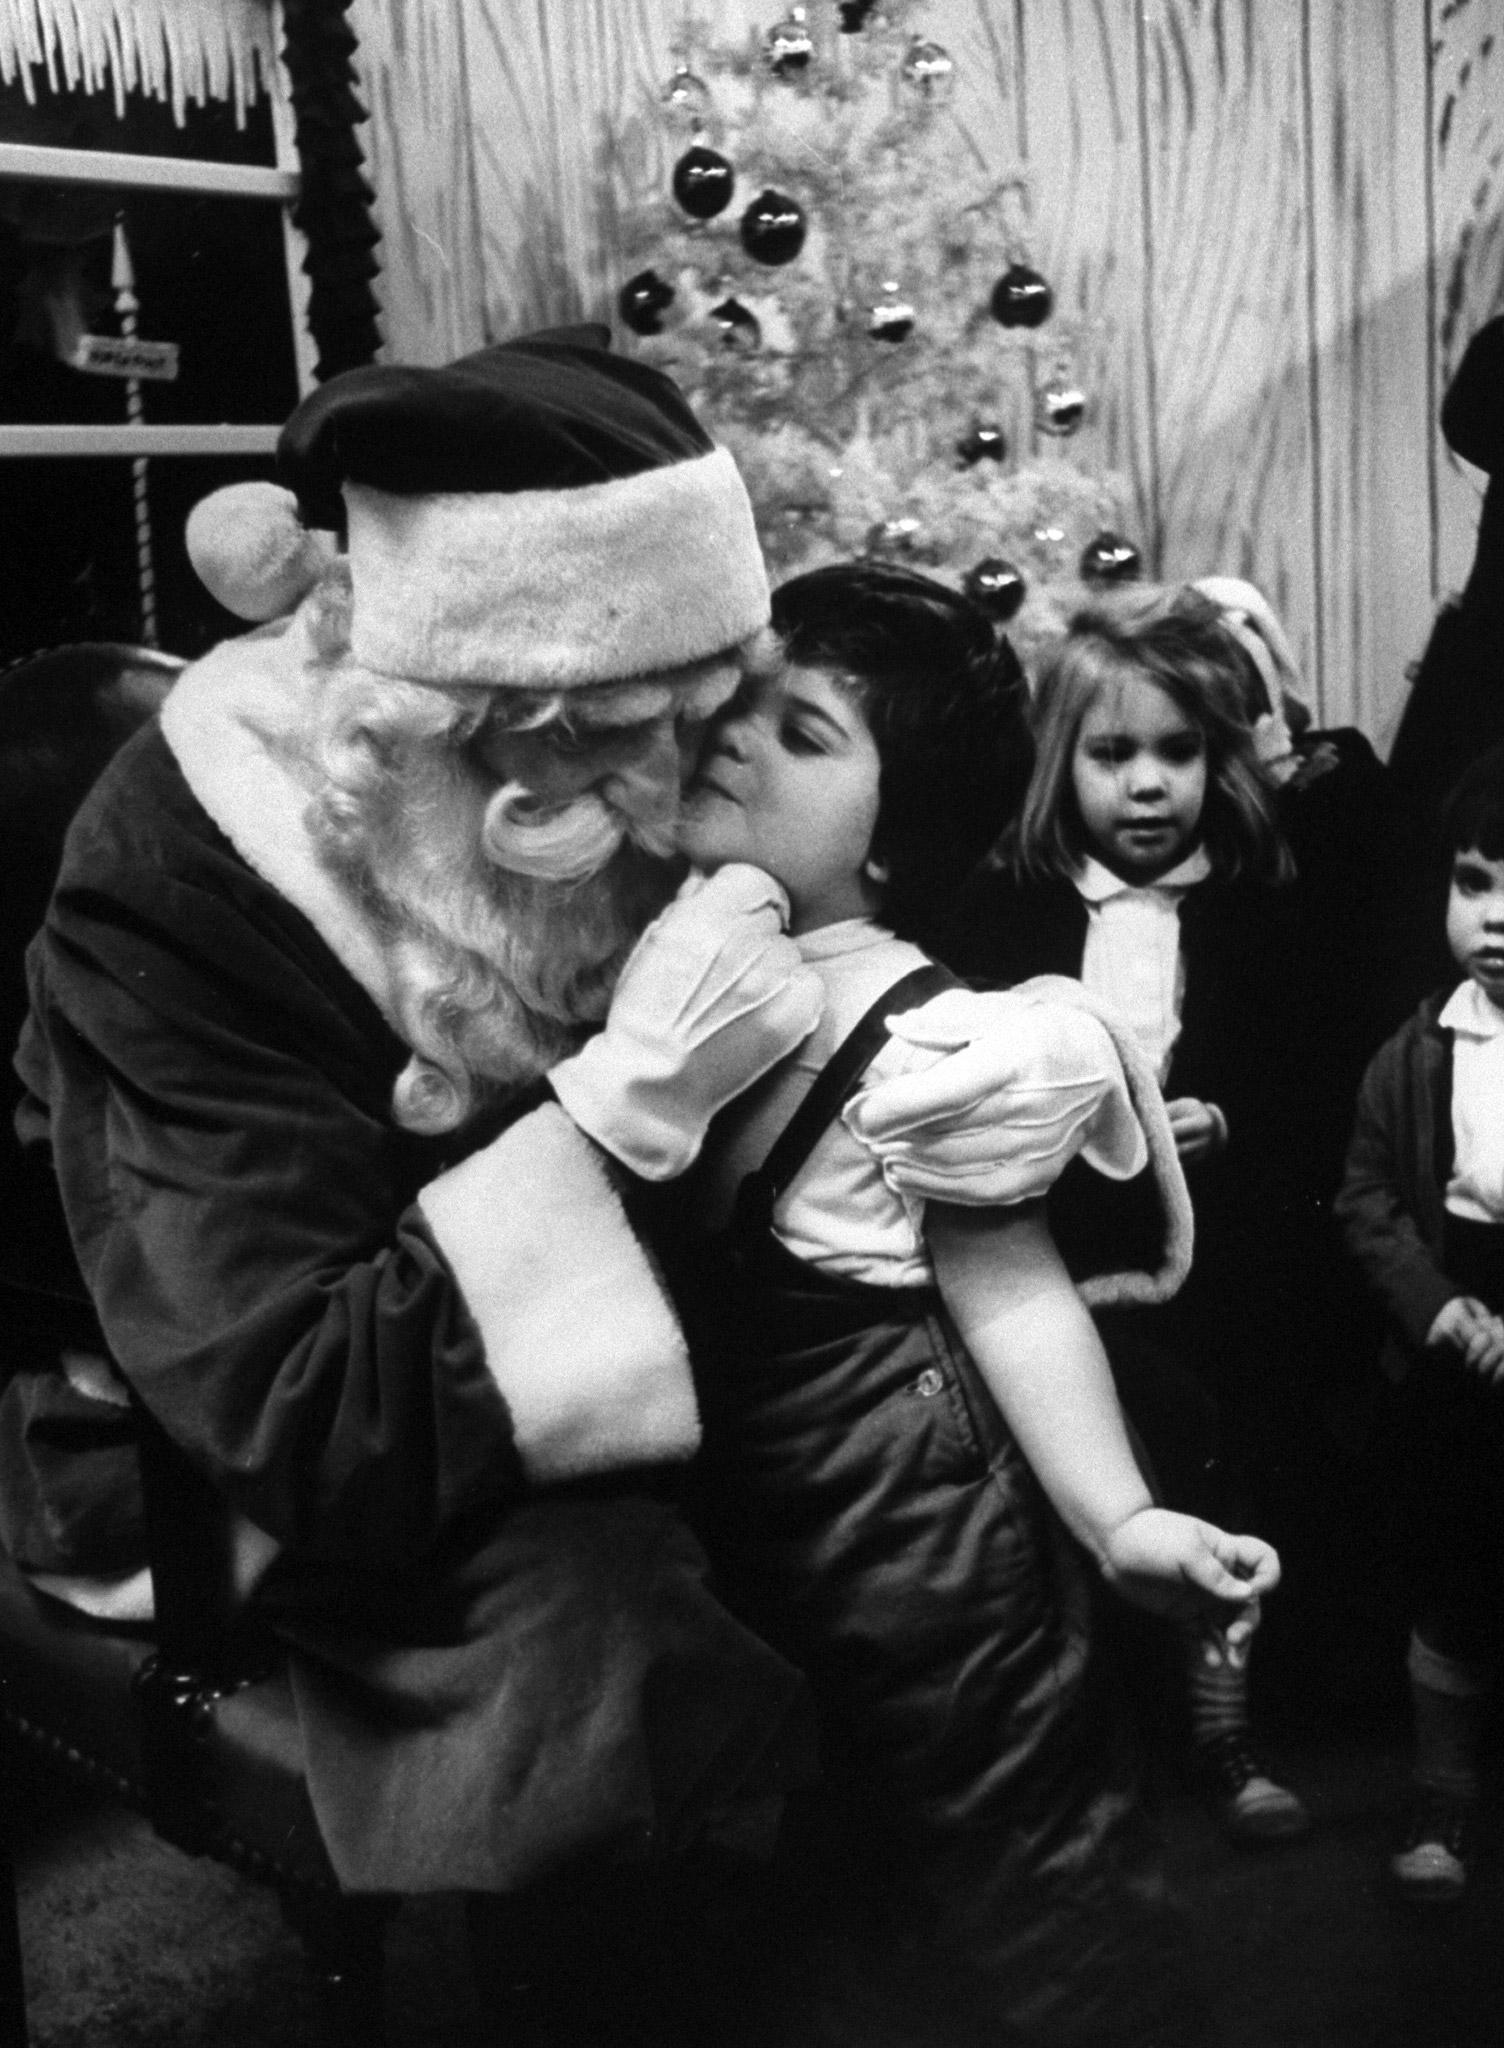 Little girl giving Santa Claus a kiss, 1962.